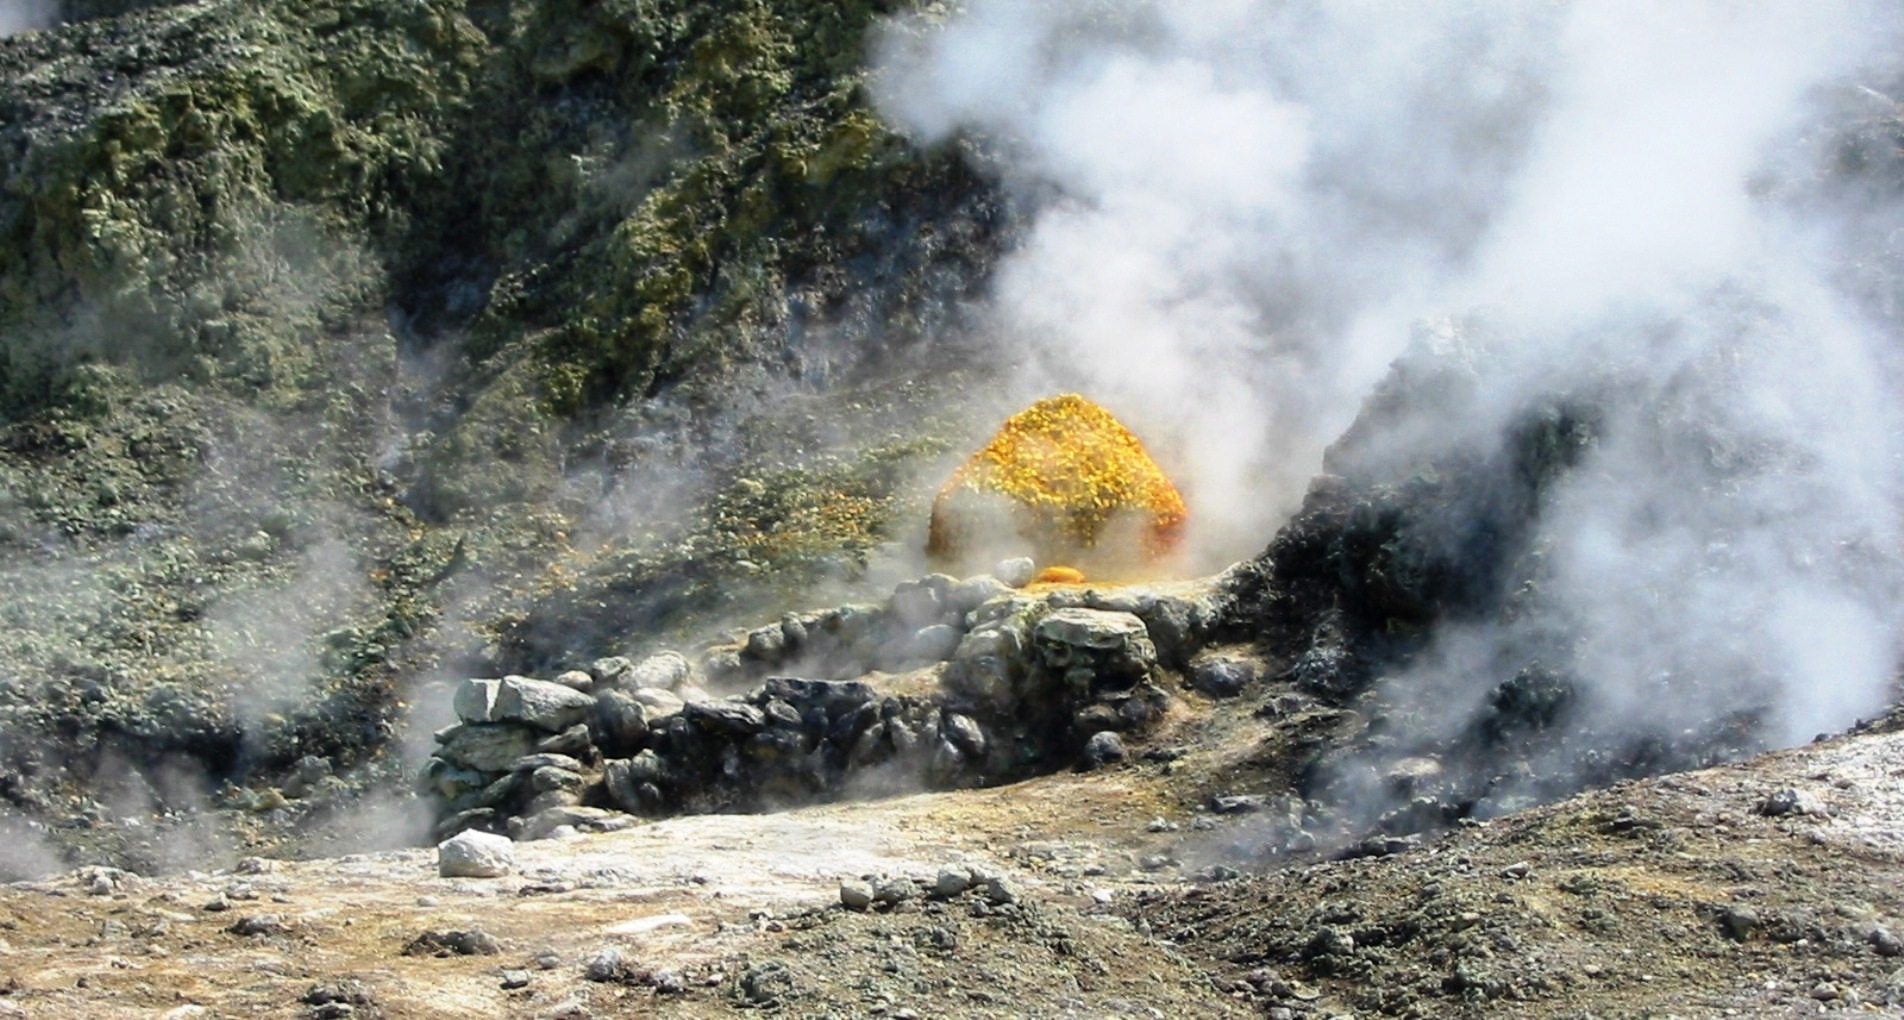 De nombreux phénomènes hydrothermaux, comme la présence de&nbsp;fumerolles&nbsp;et de&nbsp;sources chaudes,&nbsp;traduisent l'origine volcanique des champs phlégréens.&nbsp;©&nbsp;Donar Reiskoffer,&nbsp;Wikimedia common, CC by-sa 3.0